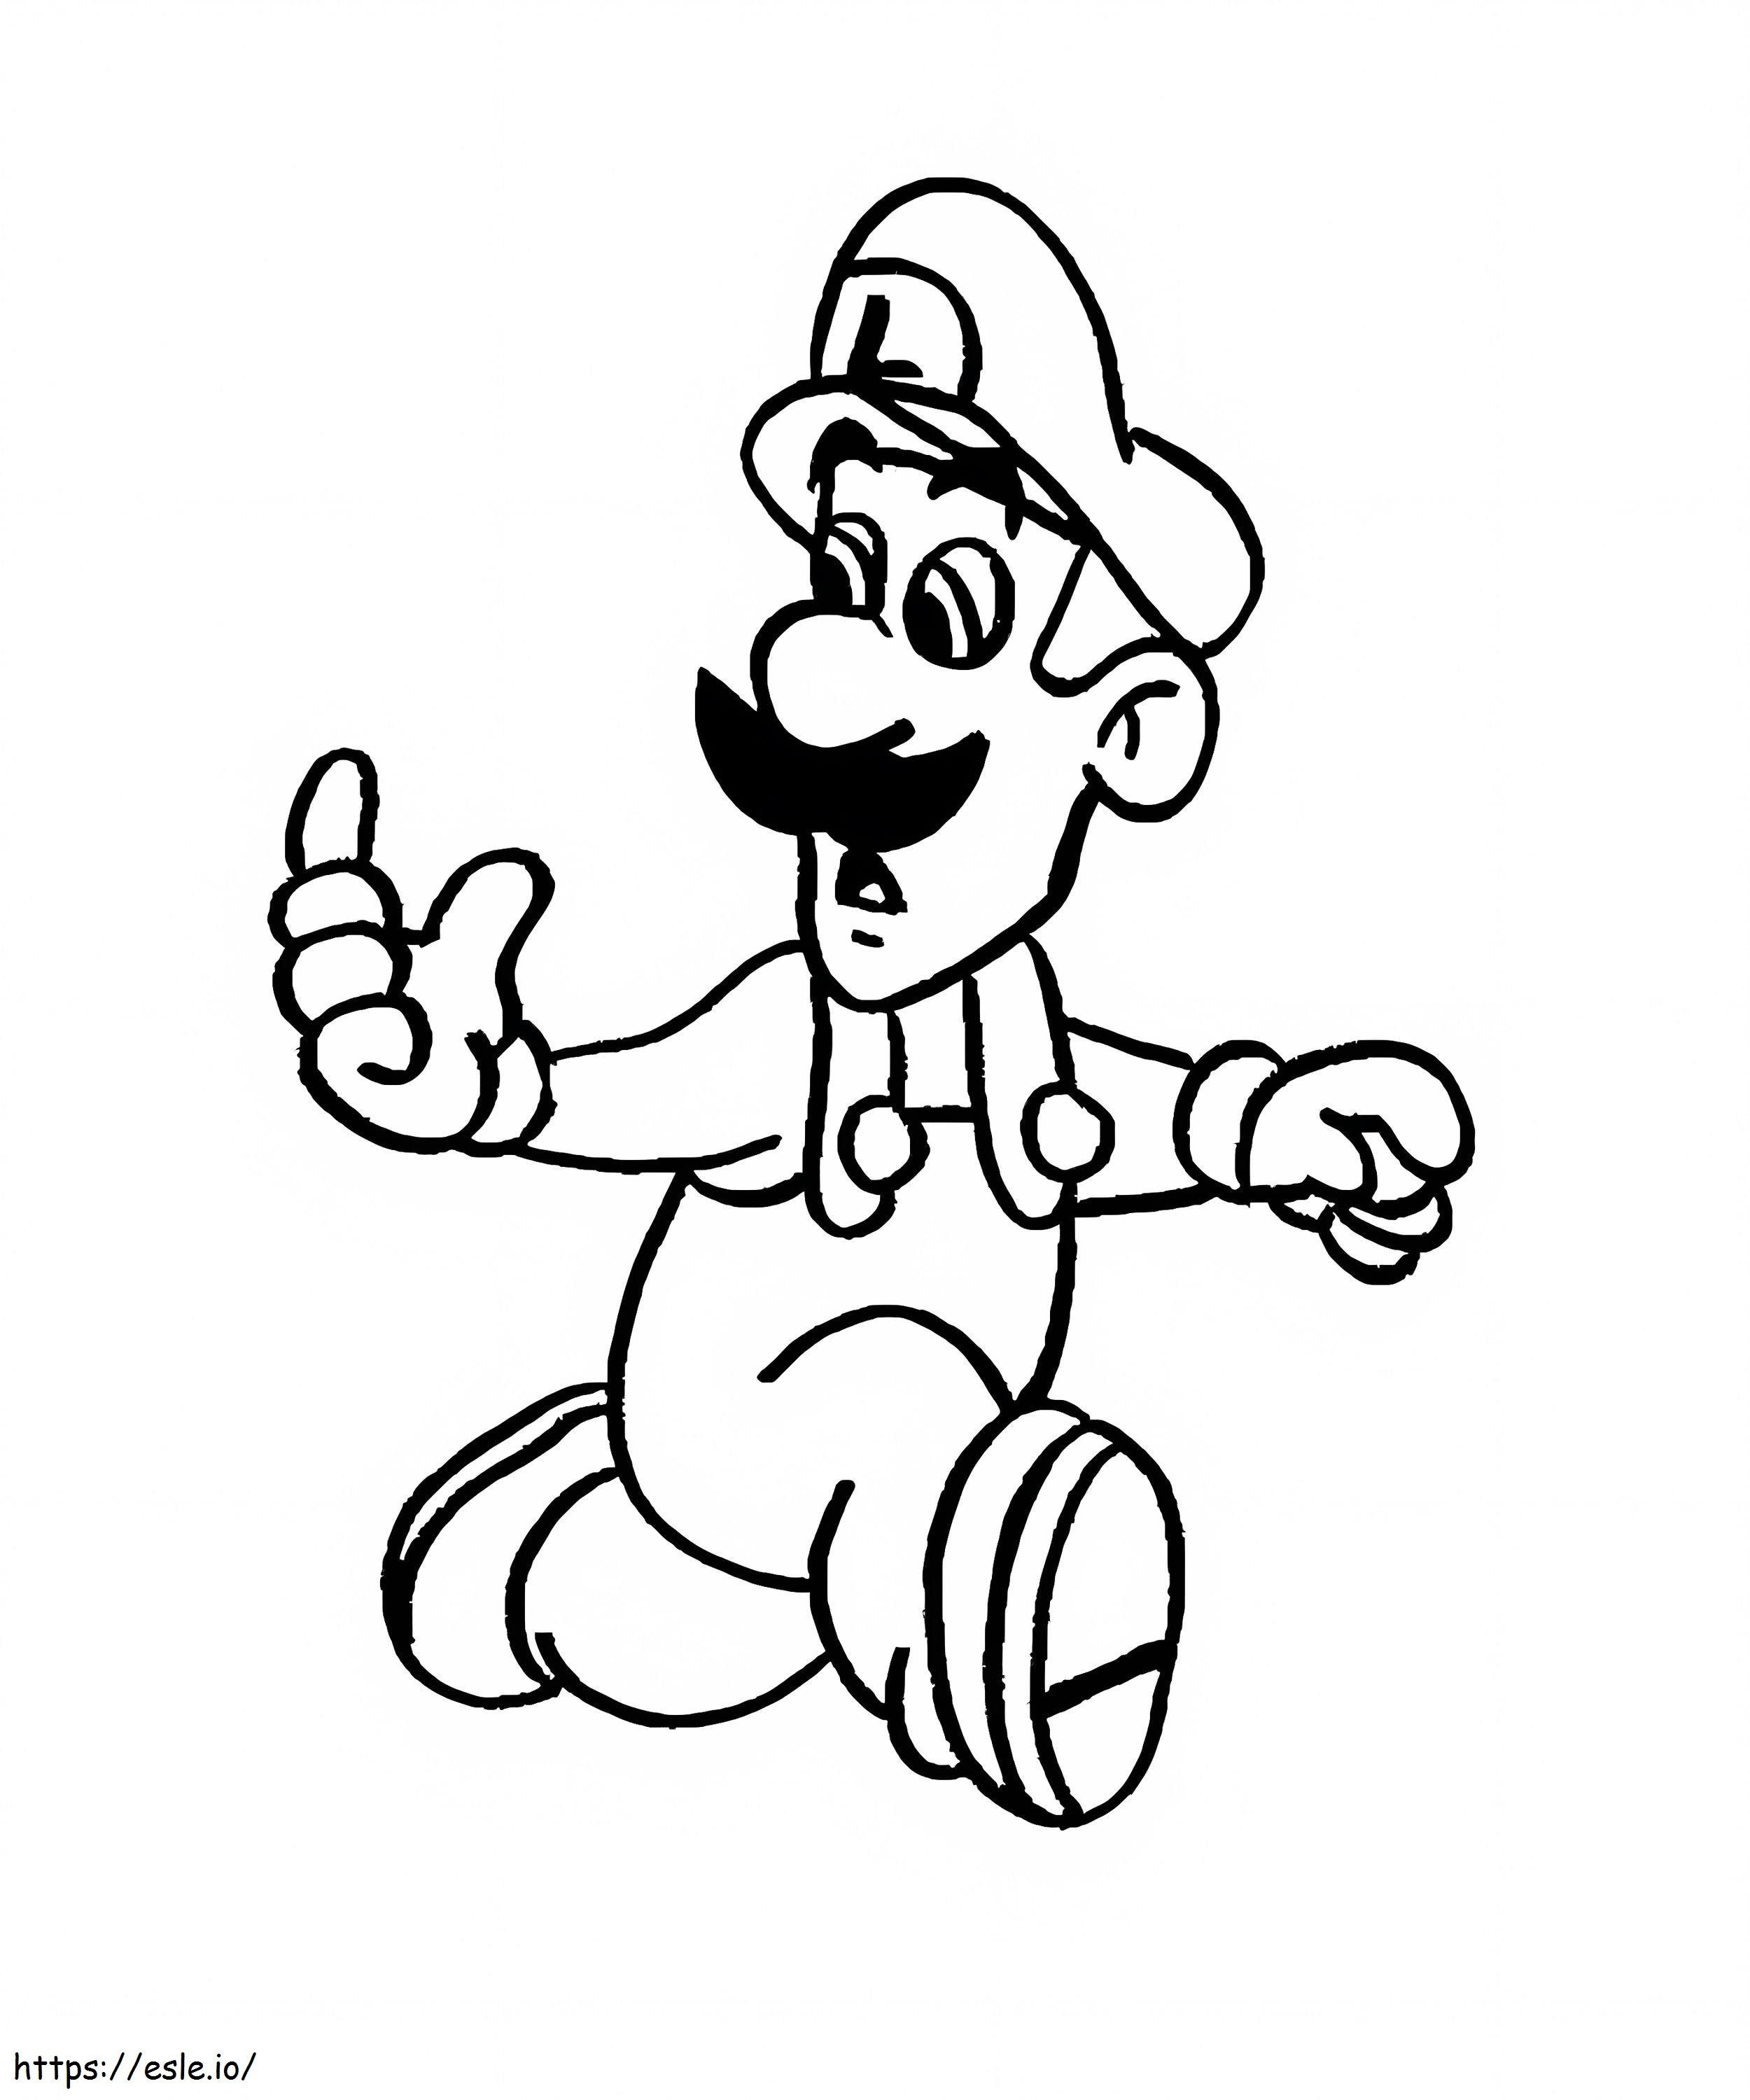 Luigi De Super Mario 5 kleurplaat kleurplaat